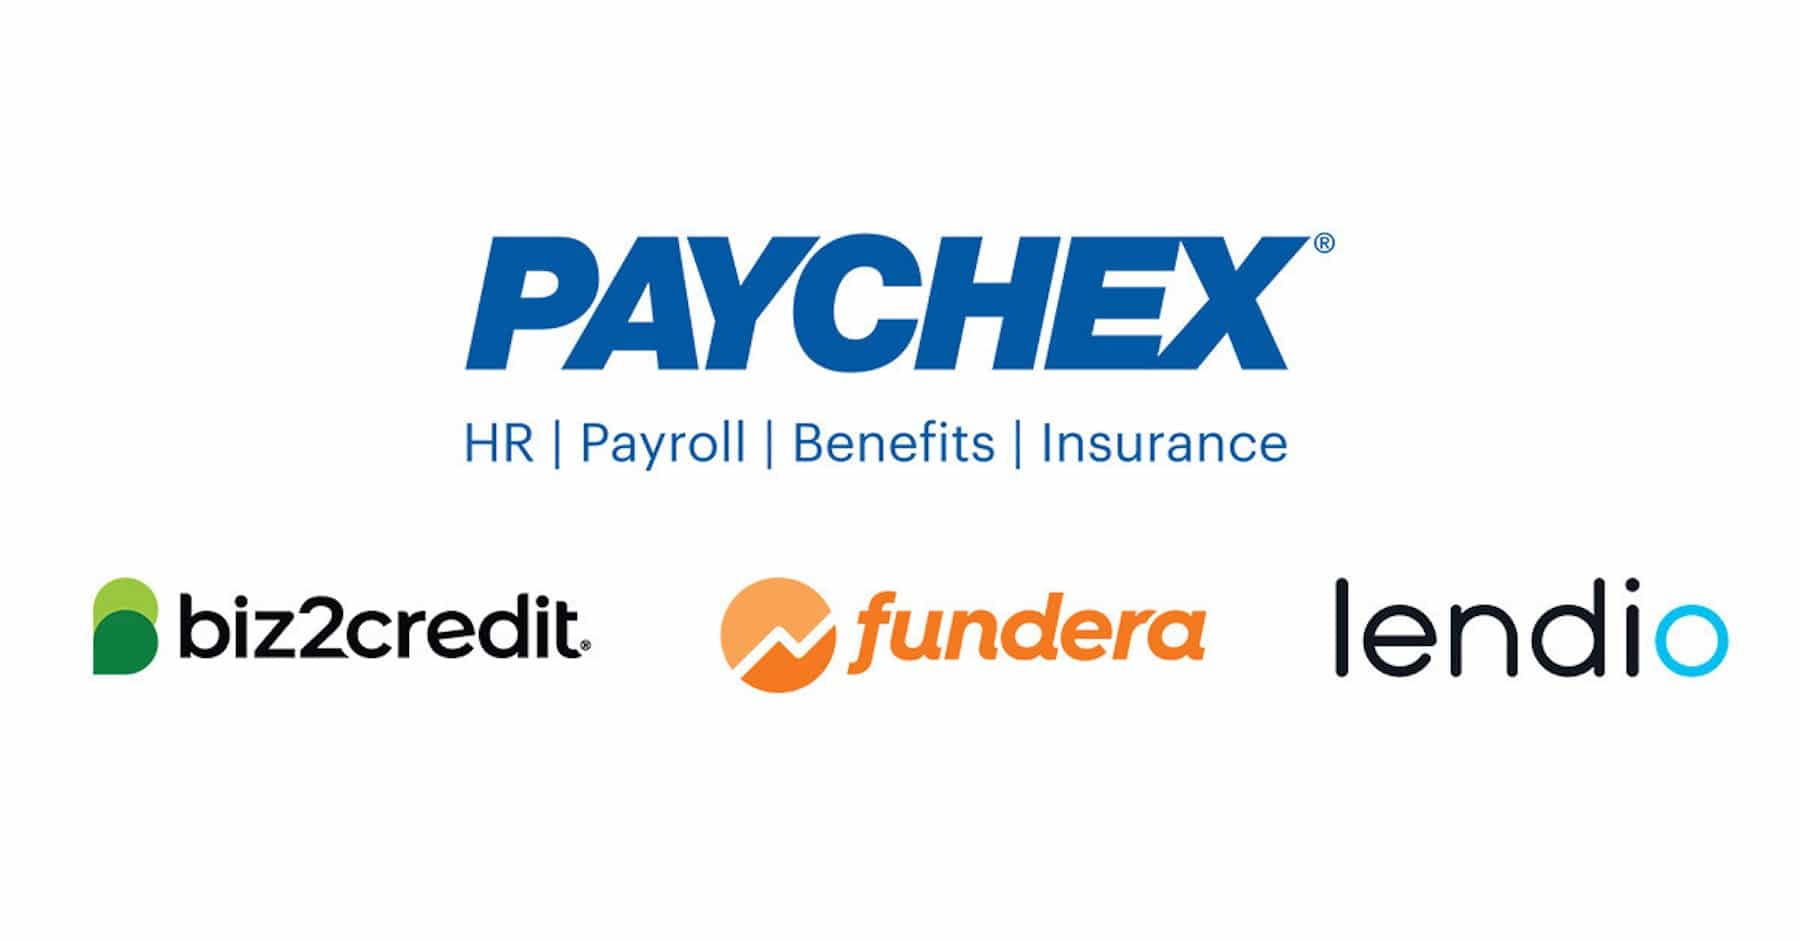 Paychex Biz2credit, Fundera, Lendio logos